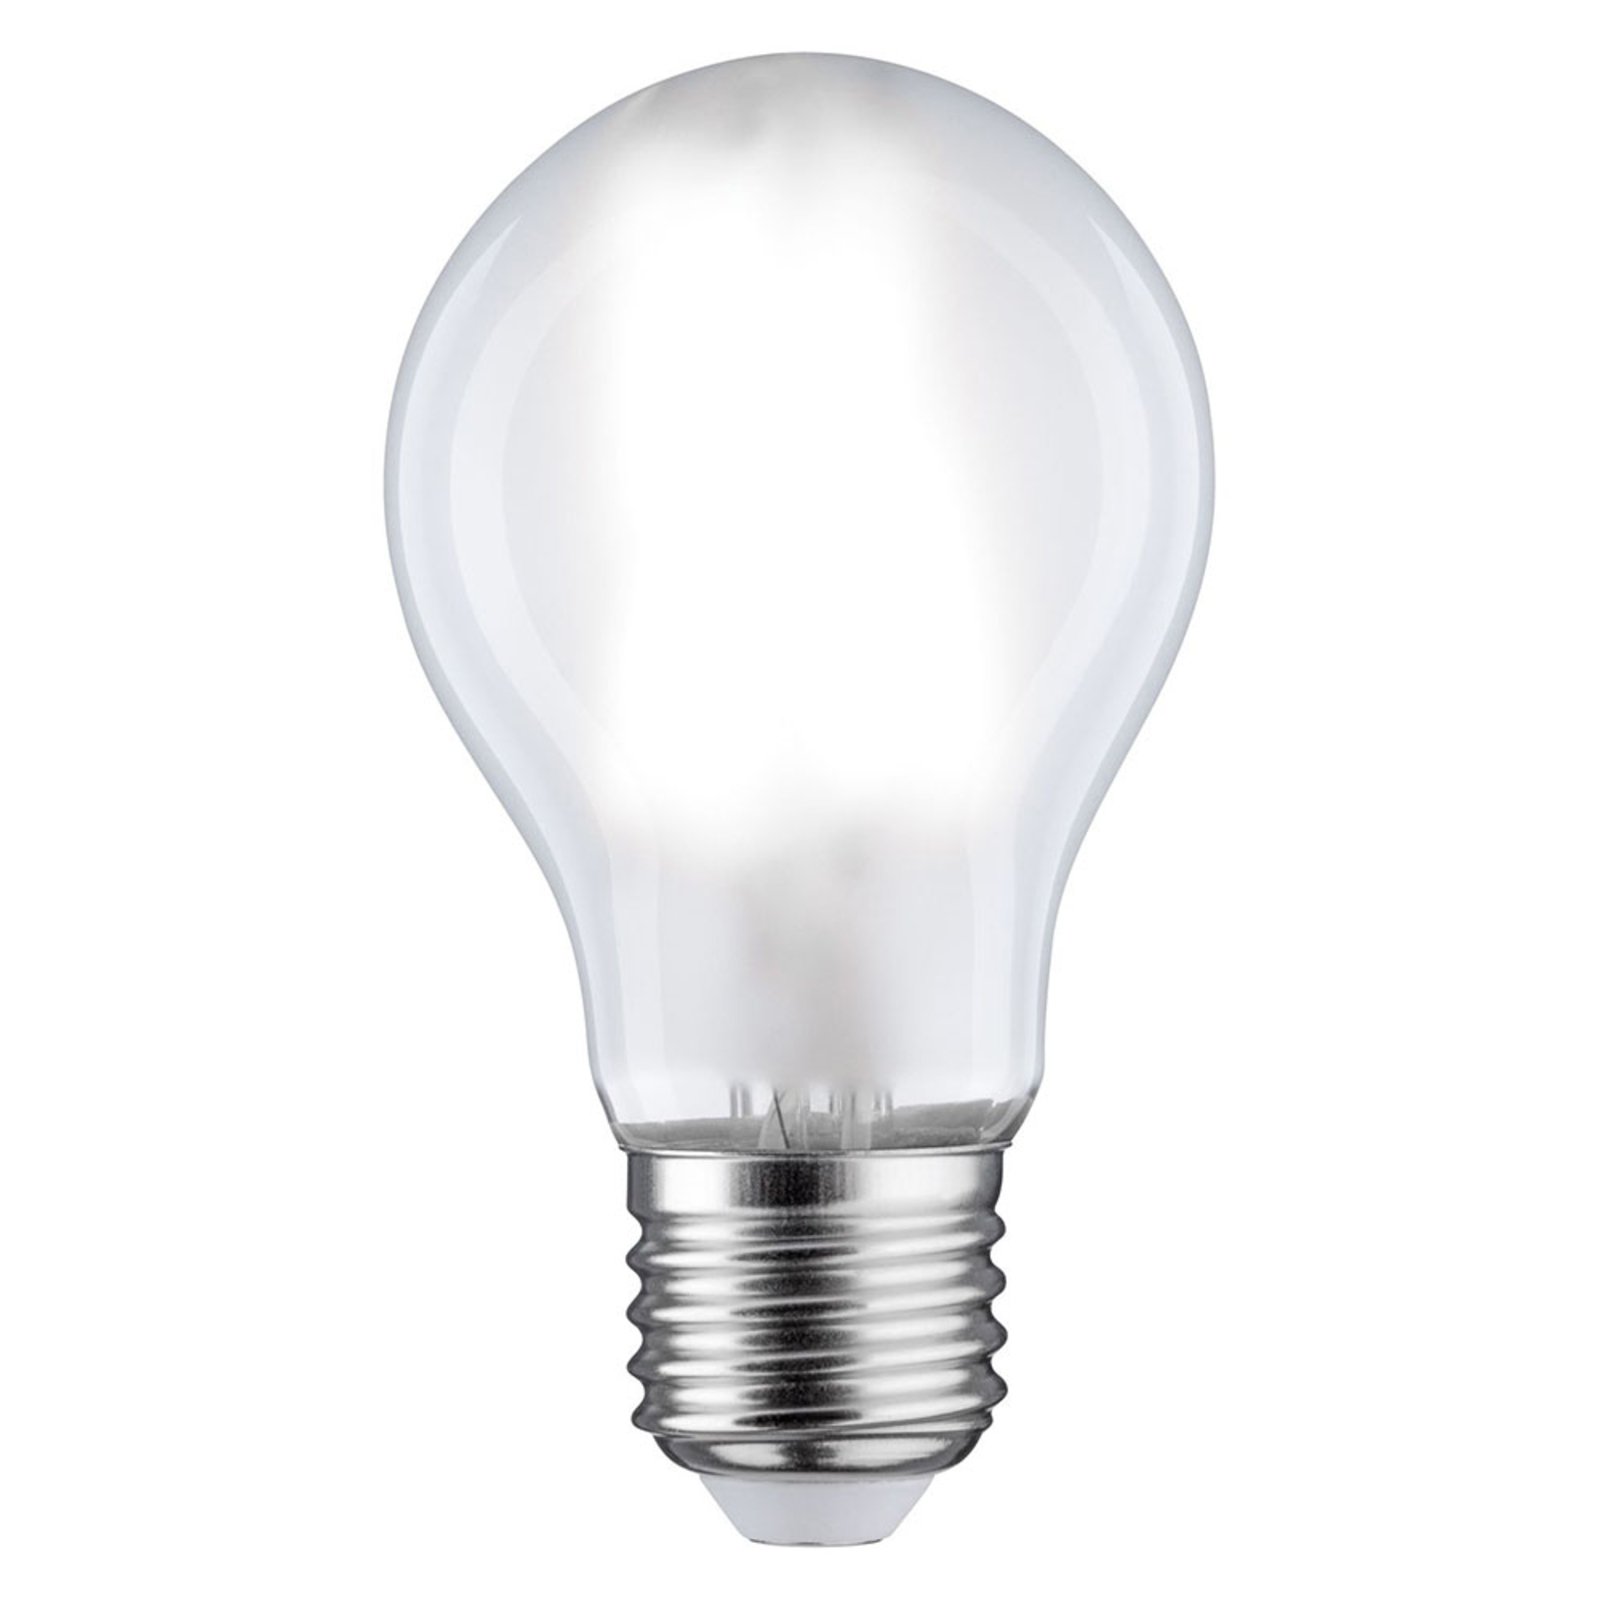 Paulmann LED-Lampe E27 7,5W 865 806lm dimmbar